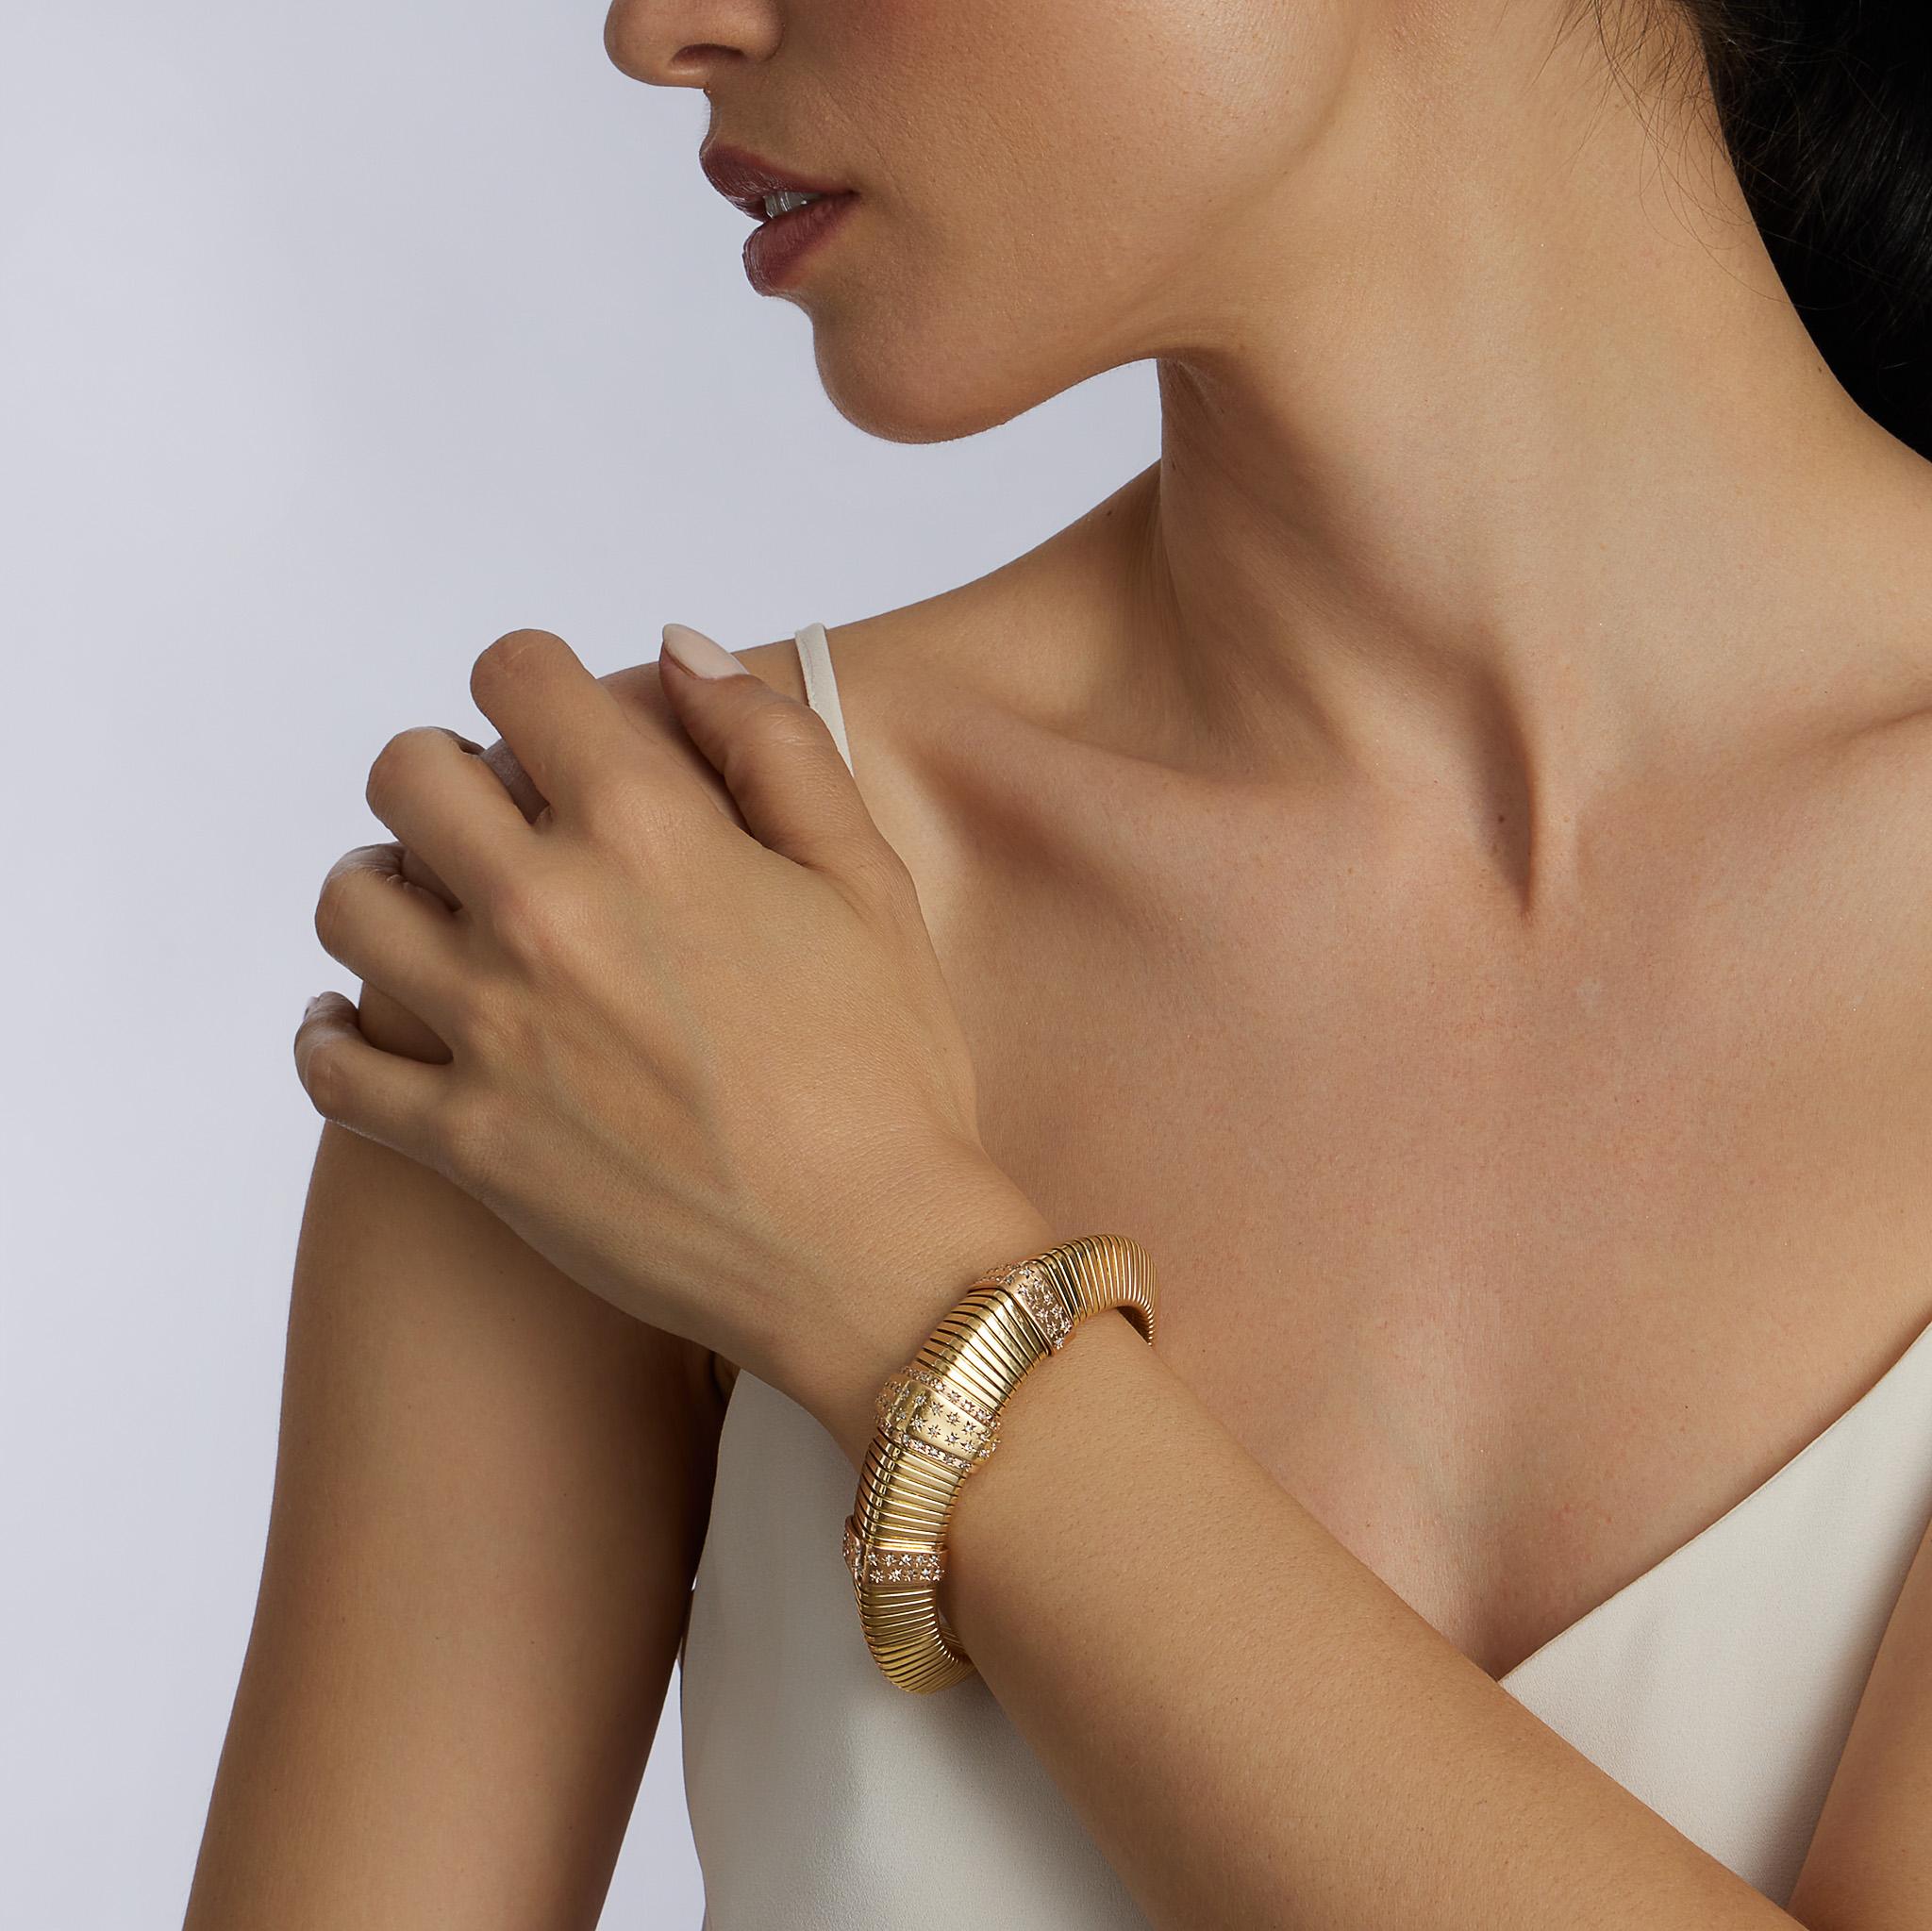 Créé à Paris dans les années 1940, ce bracelet Retro French est composé d'or 18 carats et de diamants. D'une grande souplesse, la forme effilée est composée de maillons tubogas bombés et pics, reliés par trois bandes étagées et serties de diamants